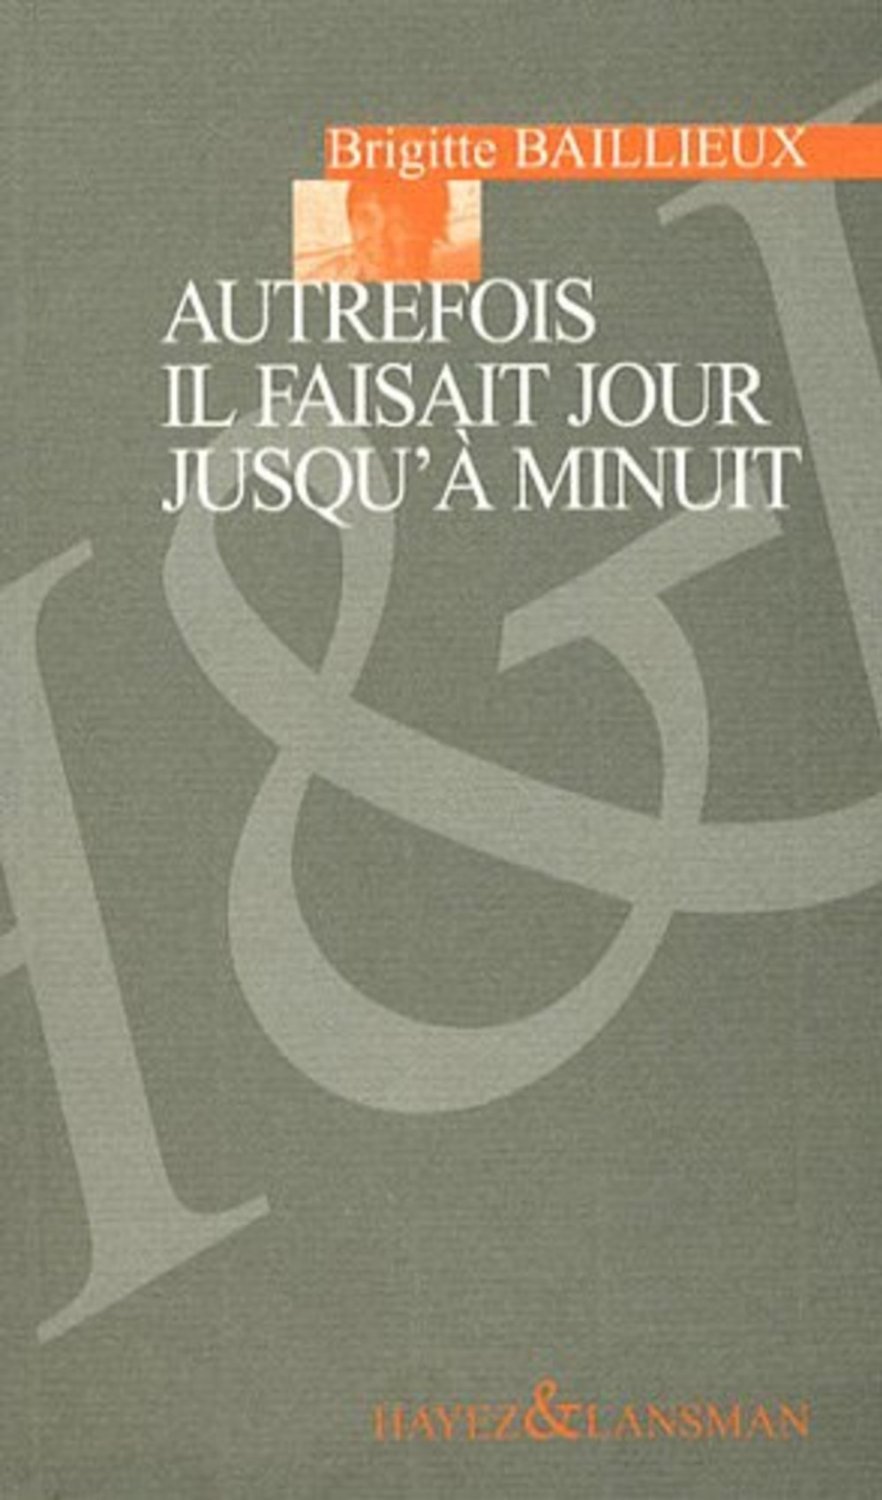 AUTREFOIS IL FAISAIT JOUR A MINUIT (9782872828685-front-cover)